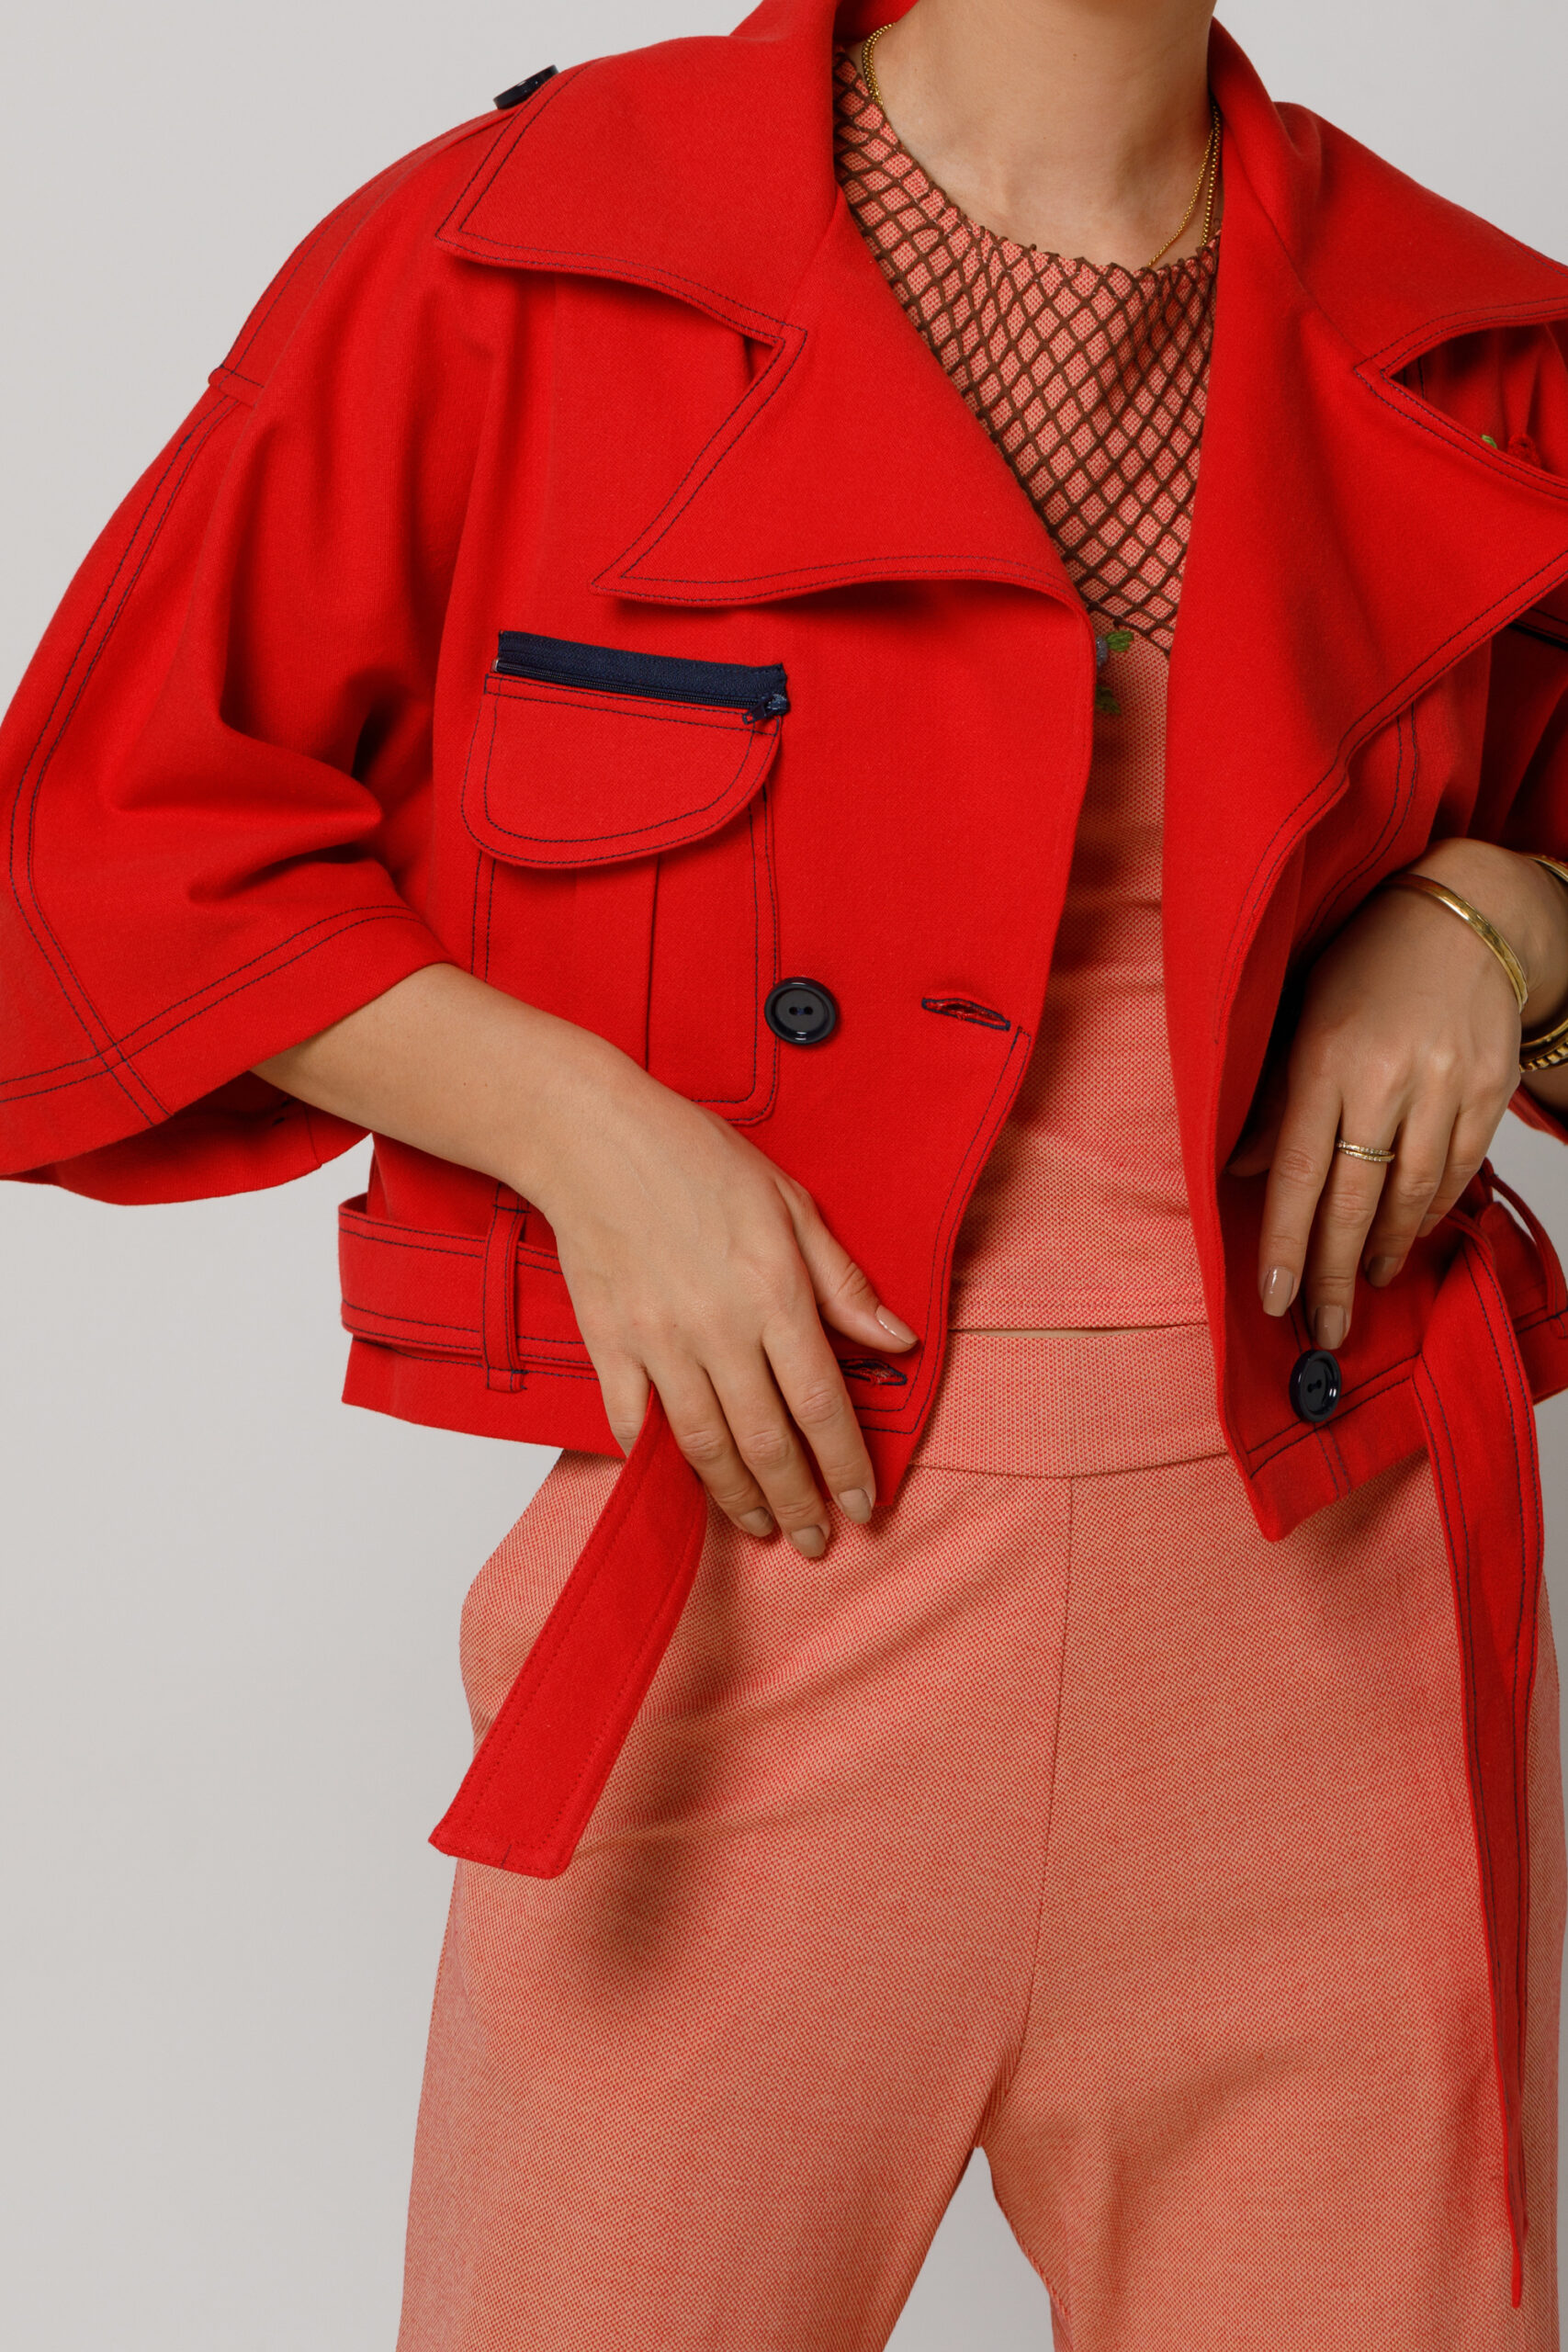 Jacheta LETO casual rosie scurta cu cordon. Materiale naturale, design unicat, cu broderie si aplicatii handmade